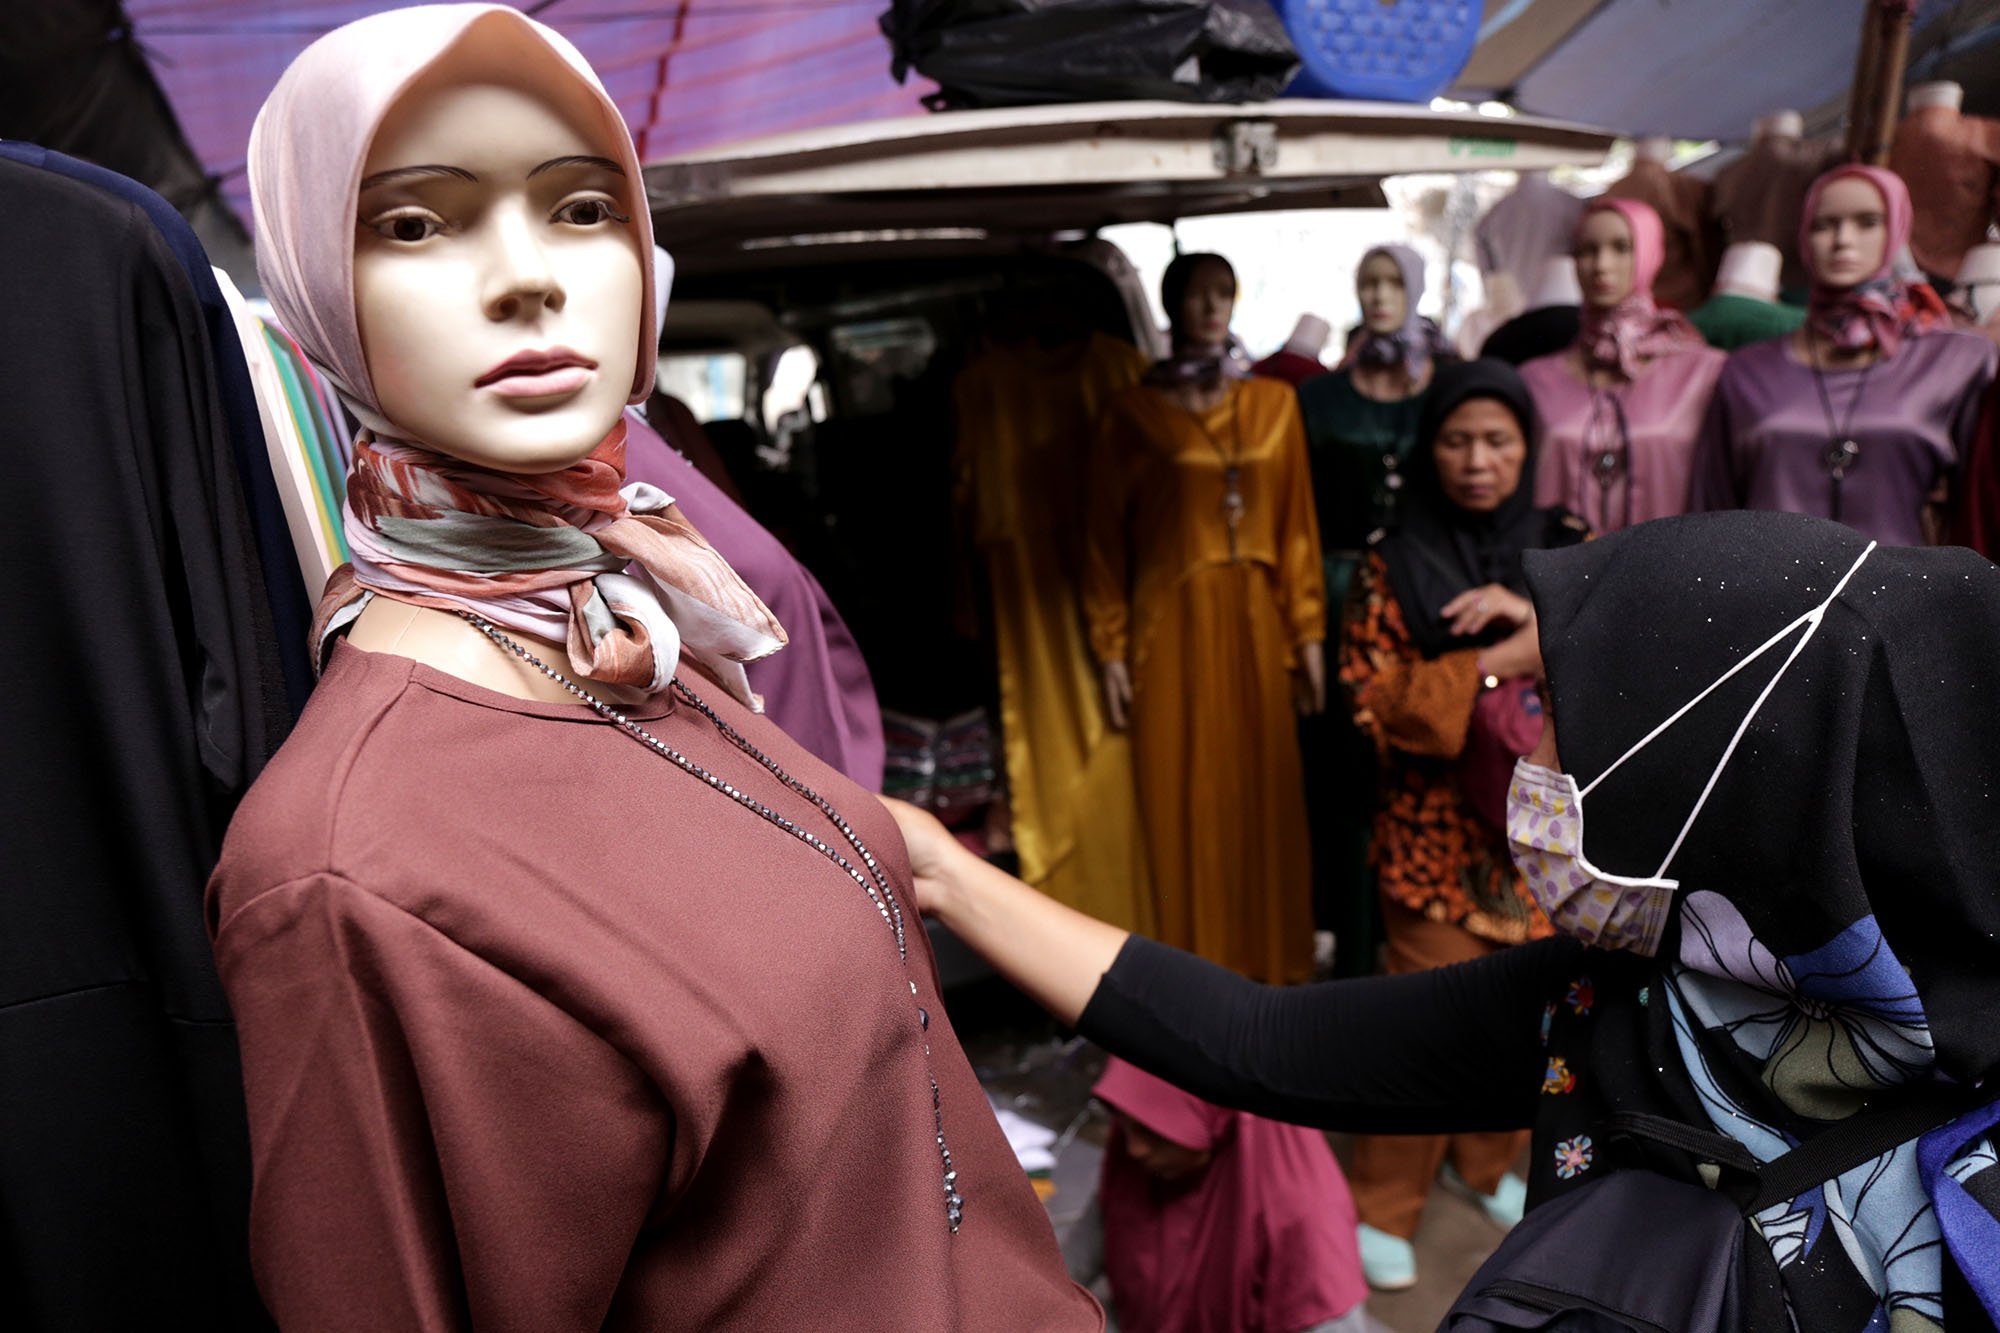 Pengunjung berbelanja busana muslimah di pusat grosir Tanah Abang , Jakarta, Kamis (16/5/2019). Penjualan busana muslimah pada pekan kedua bulan Ramadhan 1440 H, meningkat hingga 50 persen dan mendekati Idul Fitri nanti permintaan diperkirakan terus naik.